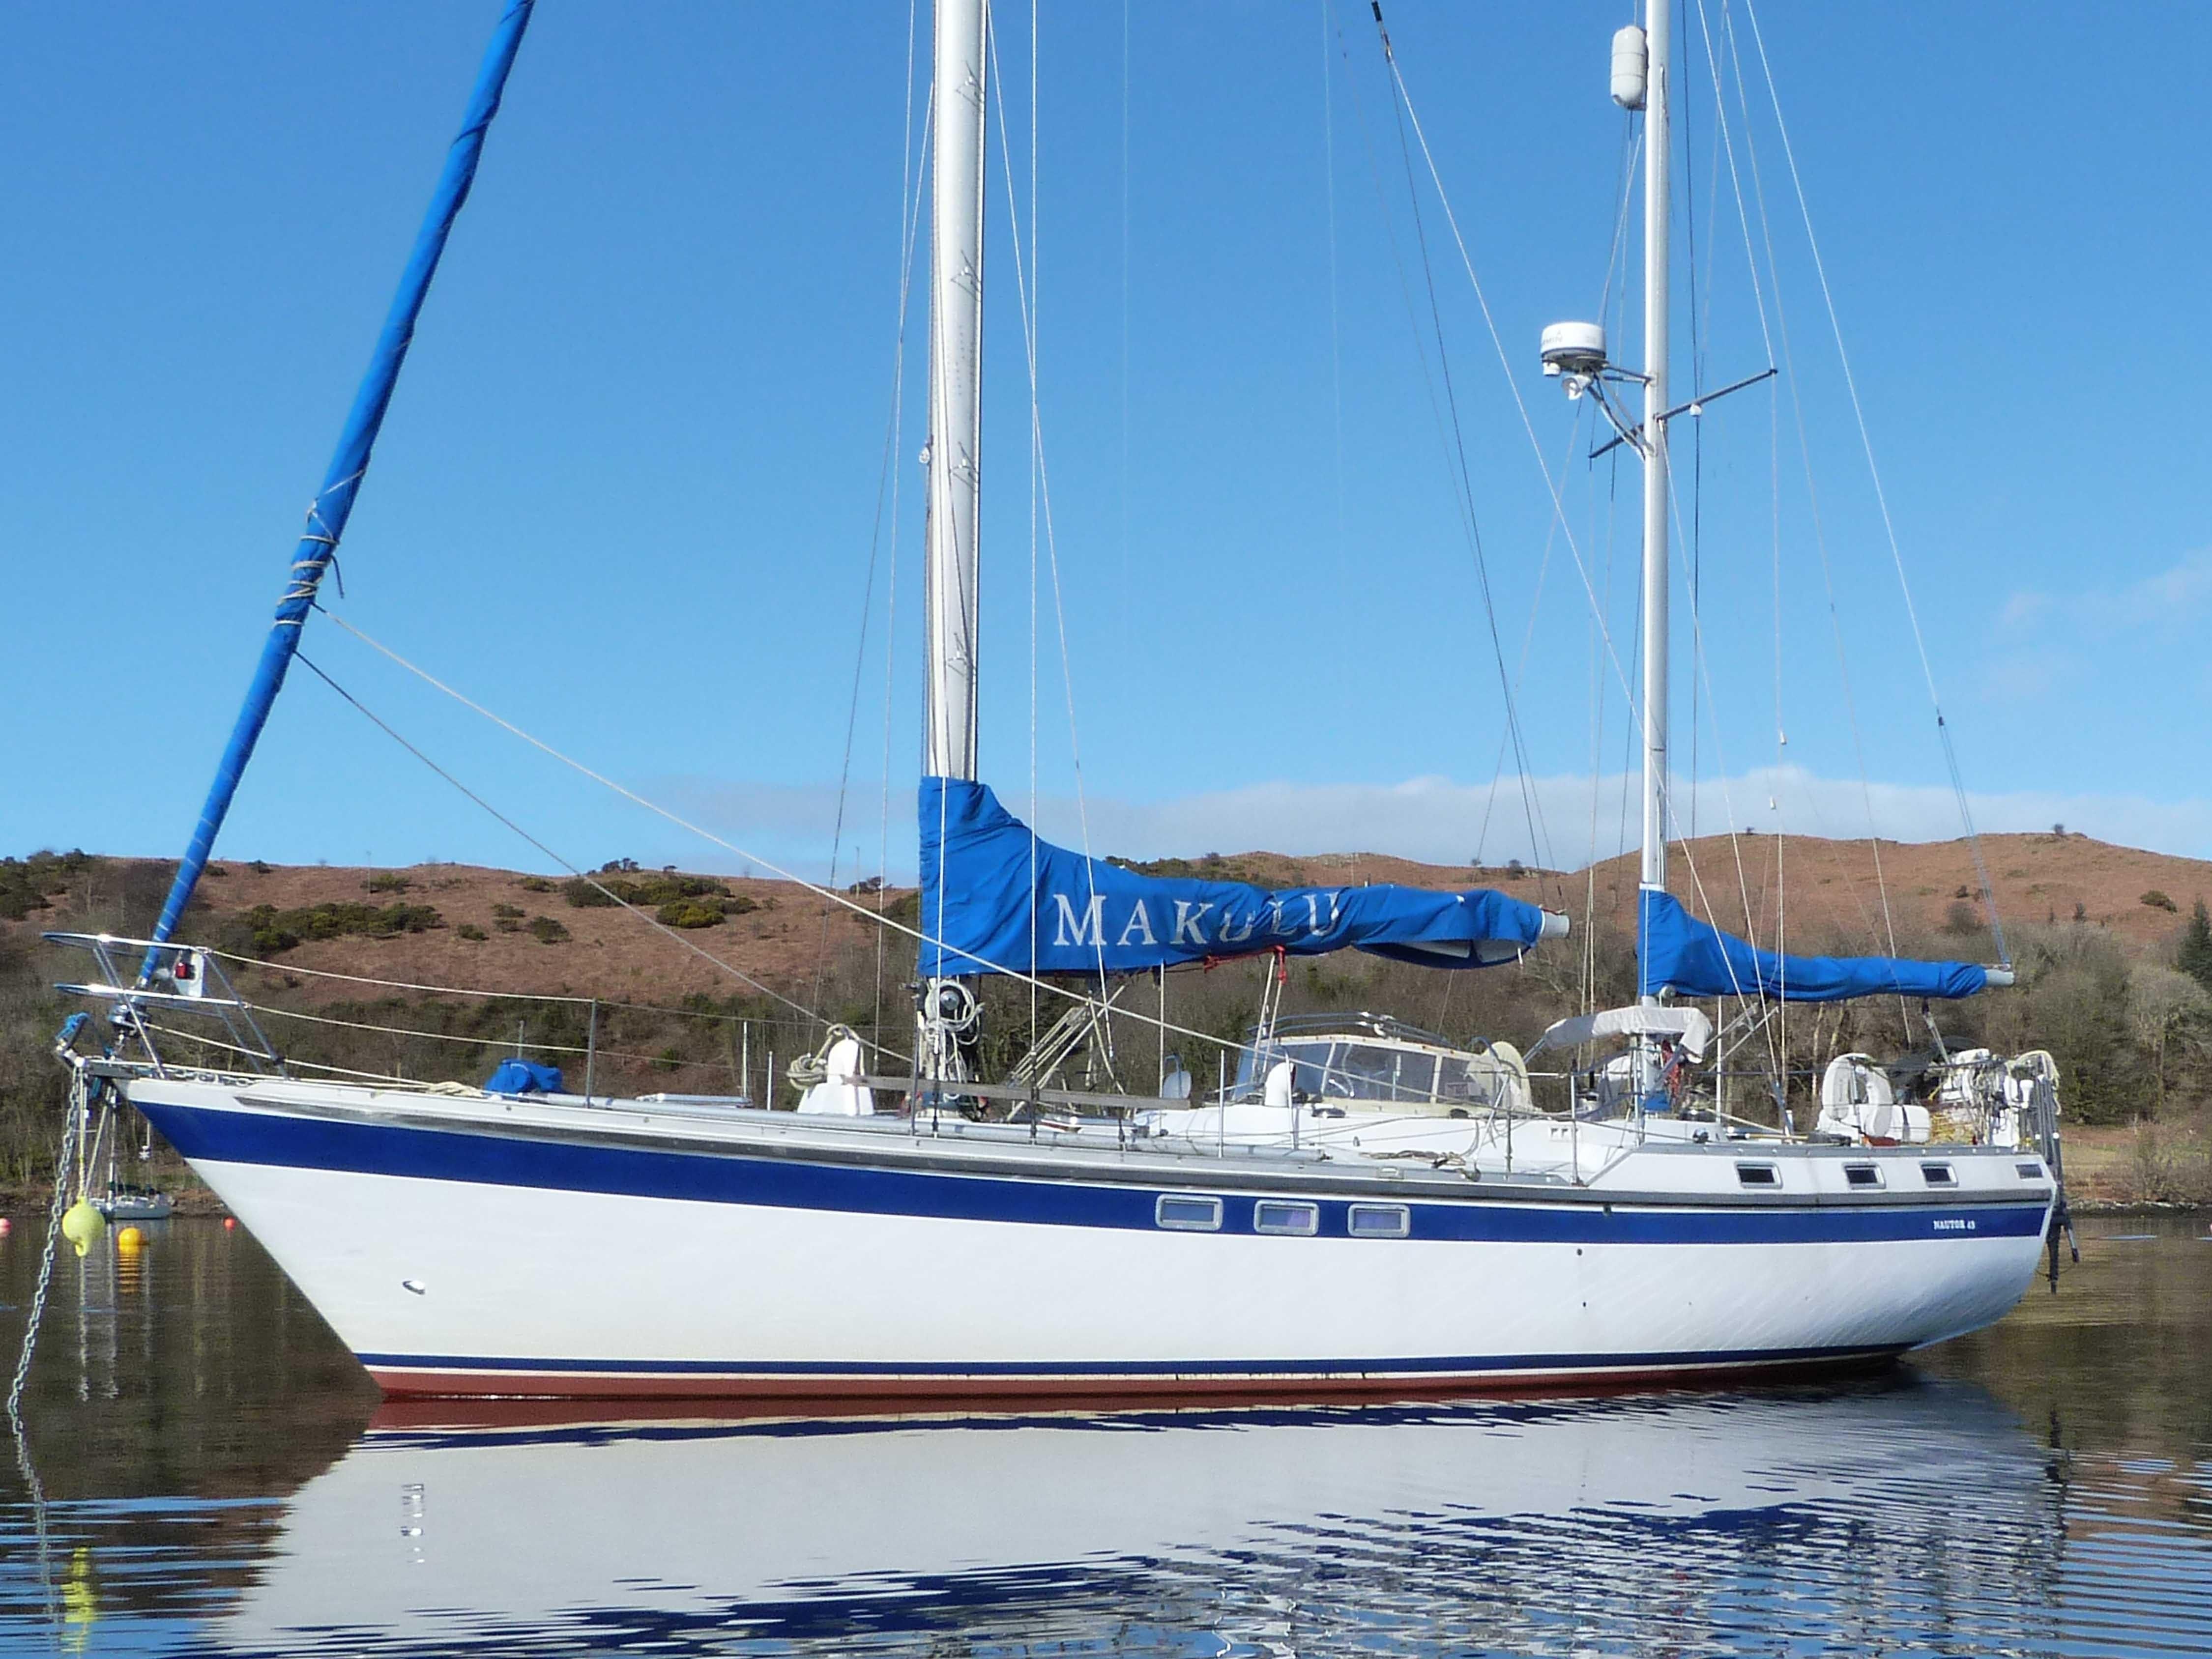 2018 viking 75 motor yacht power boat for sale - www